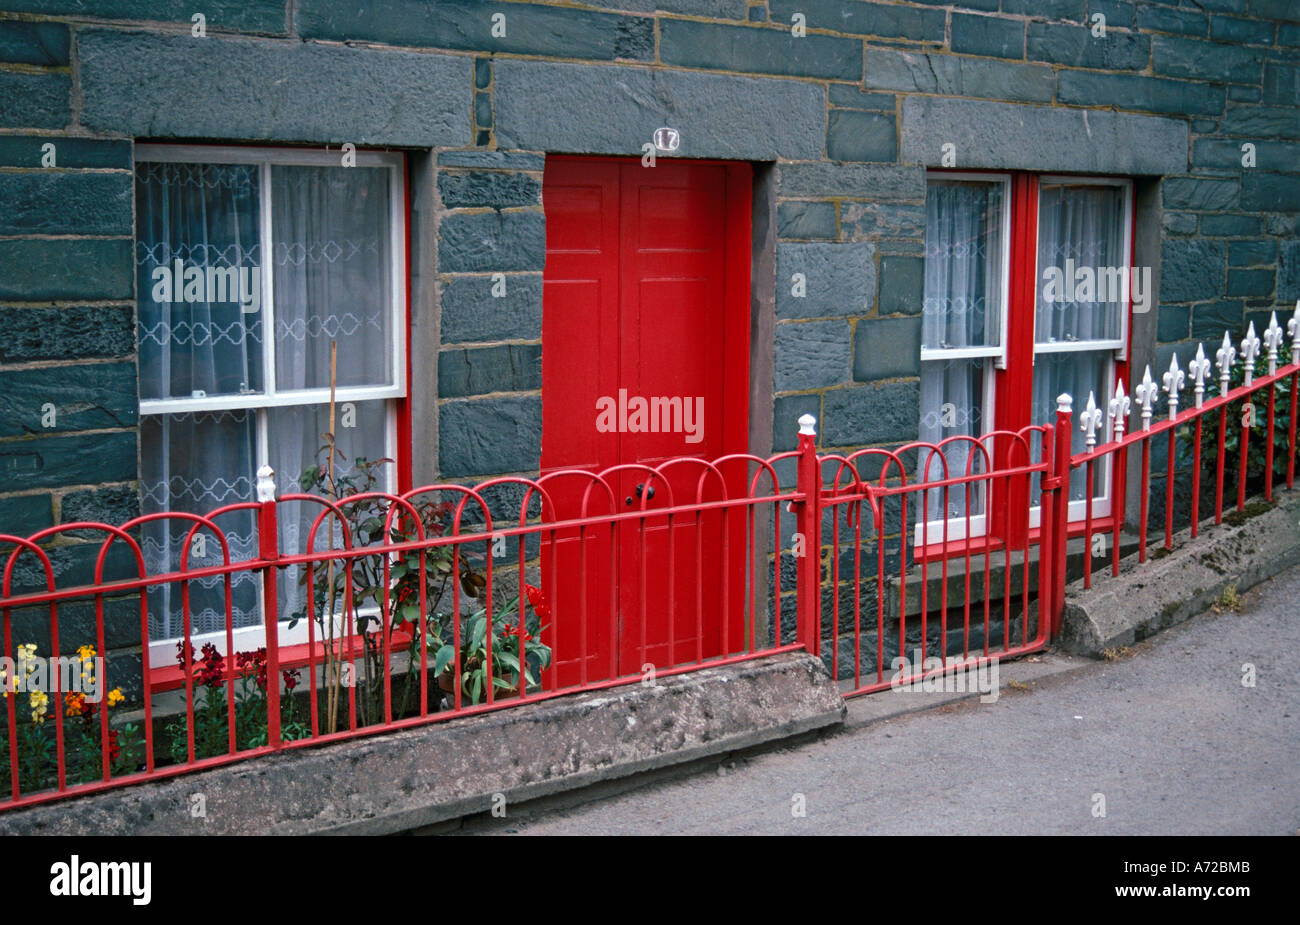 Maison construite à partir de blocs gris rouge vif avec porte avant et garde-corps. Fenêtres à guillotine peint en blanc avec du rouge l'entoure. Banque D'Images